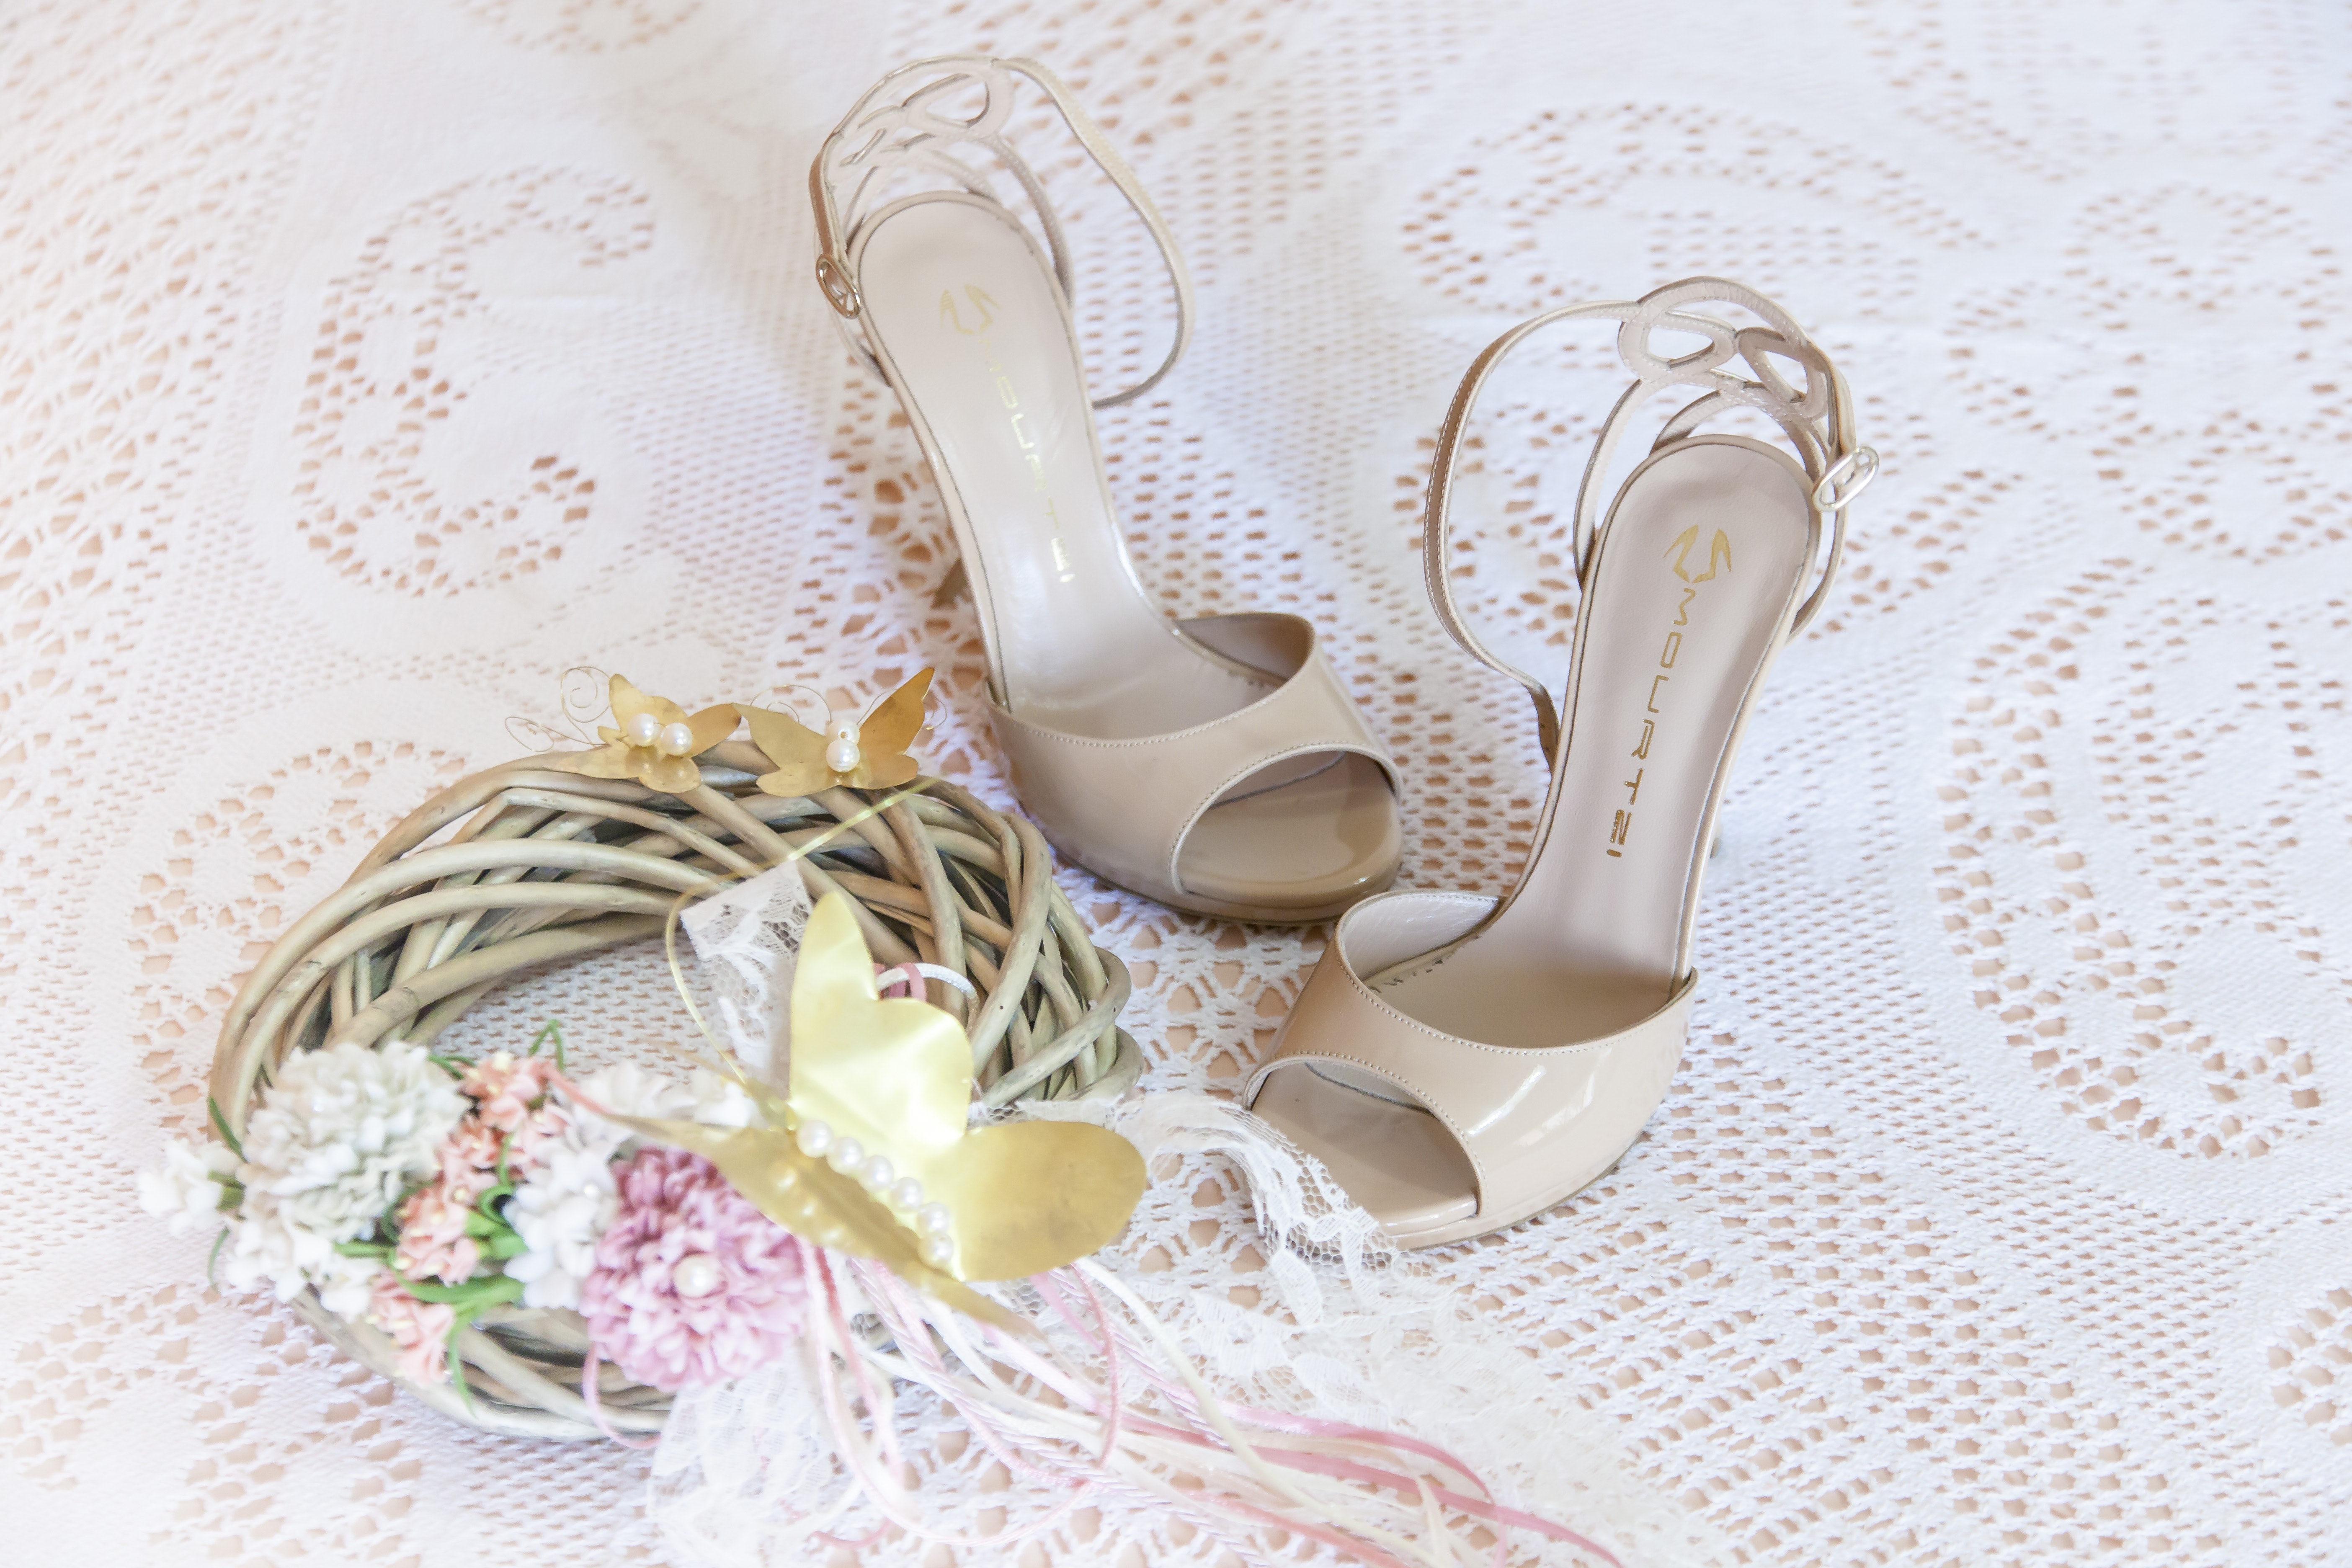 Women's white stiletto sandals on white floral design textile photo